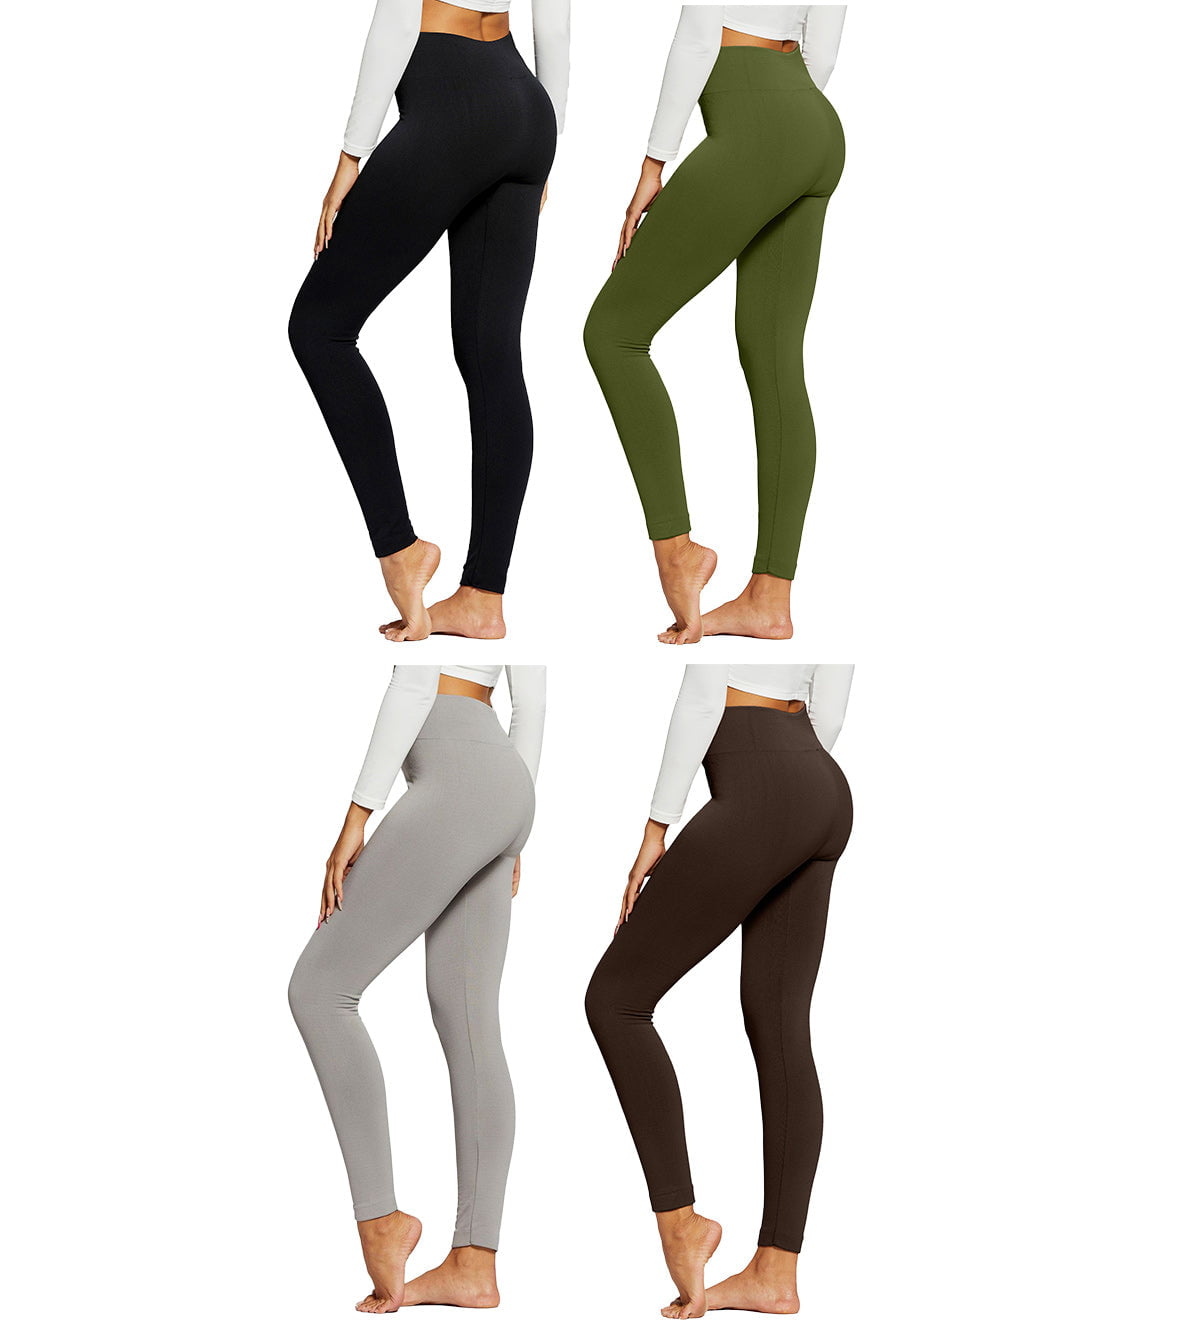 Premium Women's Fleece Lined Leggings - High Waist Leggings Pack of 4 -  Regular and Plus Size - 4 Pack of Leggings - 4-pack - Black, Olive Green